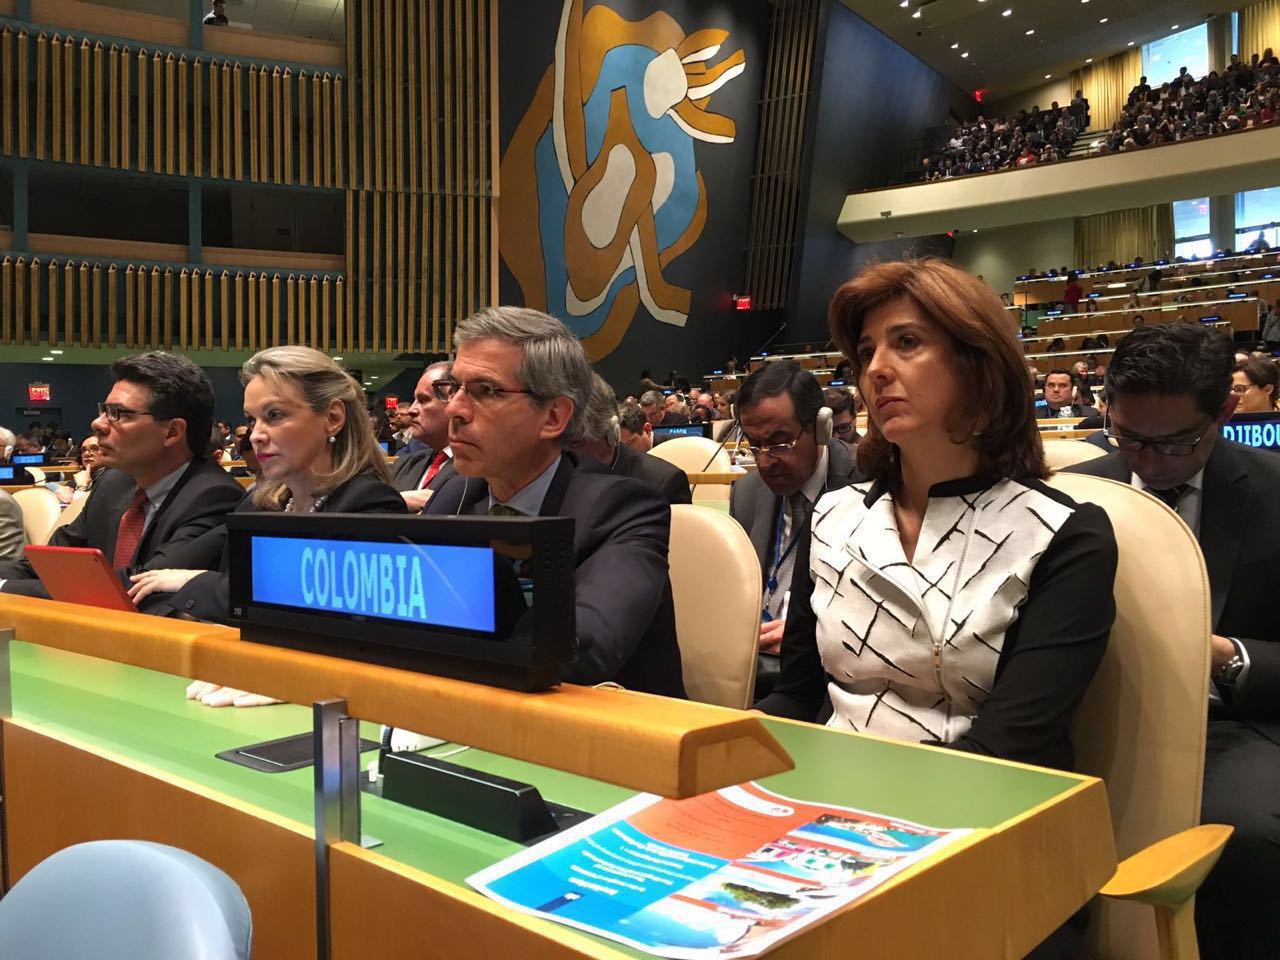 Canciller María Ángela Holguín participó en la apertura de la sesión especial de la Asamblea General de las Naciones Unidas (UNGASS) sobre drogas